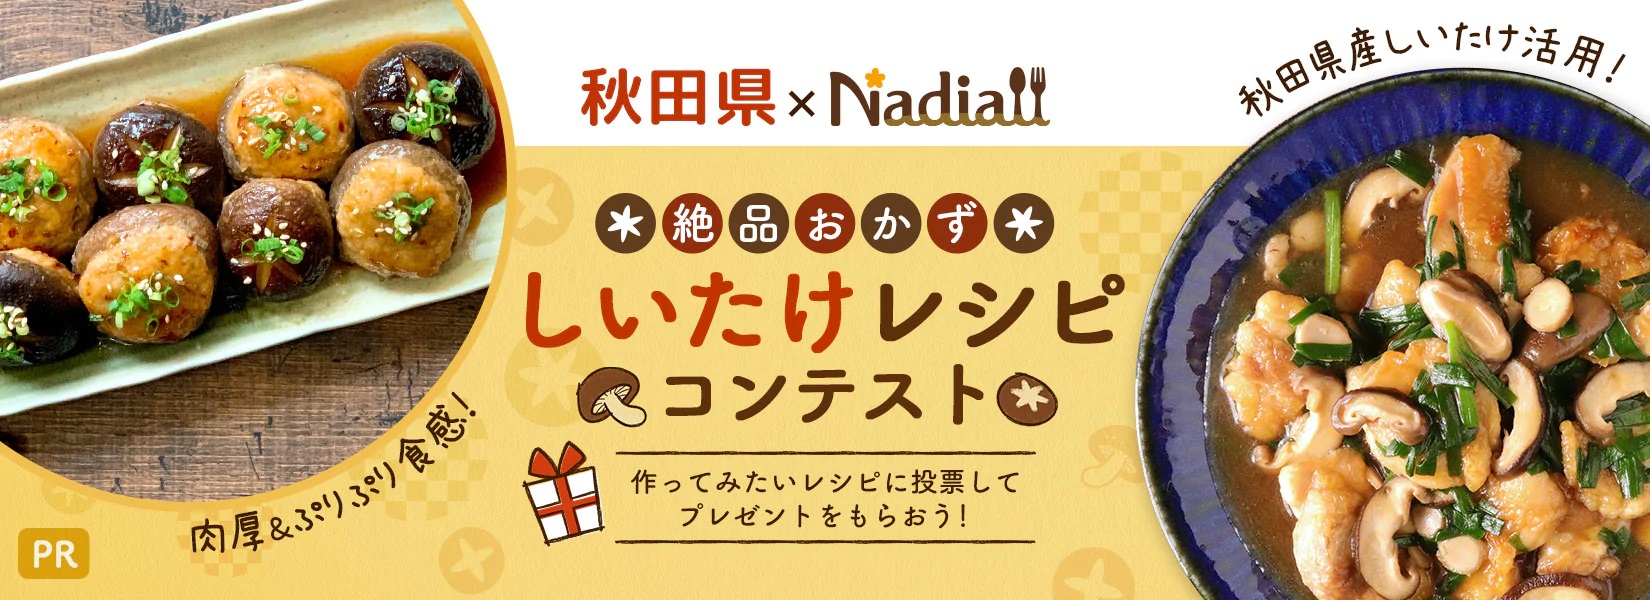 秋田県 Nadia 絶品おかず しいたけレシピコンテスト 作ってみたいと思ったレシピに投票して プレゼントがもらえるキャンペーンを実施中 Nadia株式会社のプレスリリース